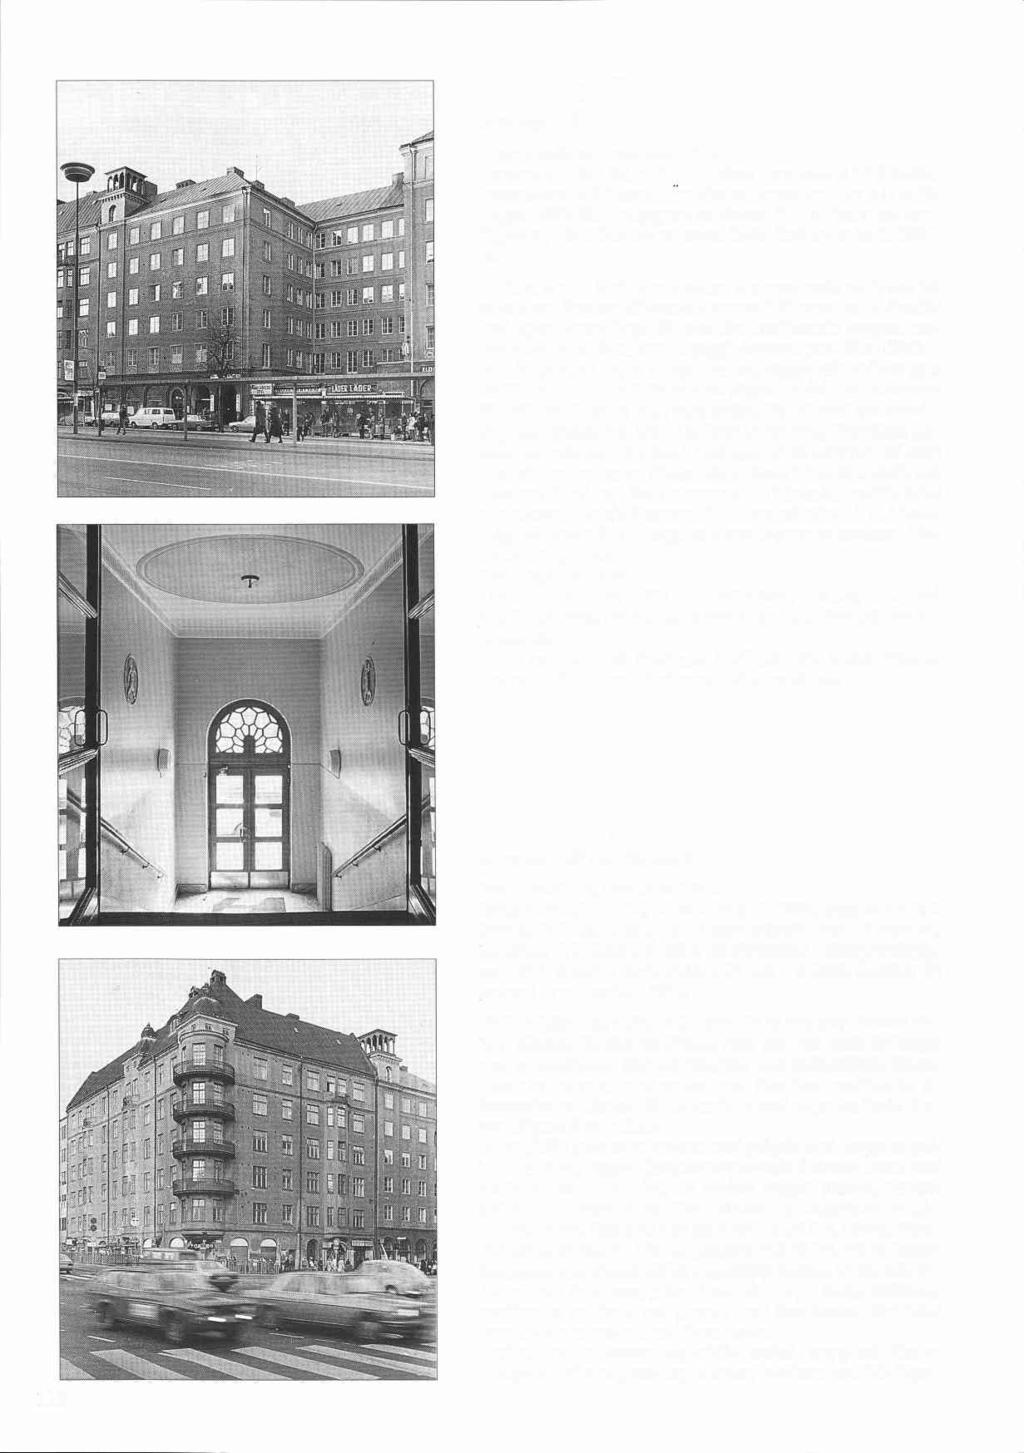 Kolonnen 5 Ringvägen 125 Byggnadsår 1927-29, arkitekt F Peters, byggherre C P Niklasson, byggmästare G Niklasson. Ändring av danssalong i bv och kv för biograf 1932-33.